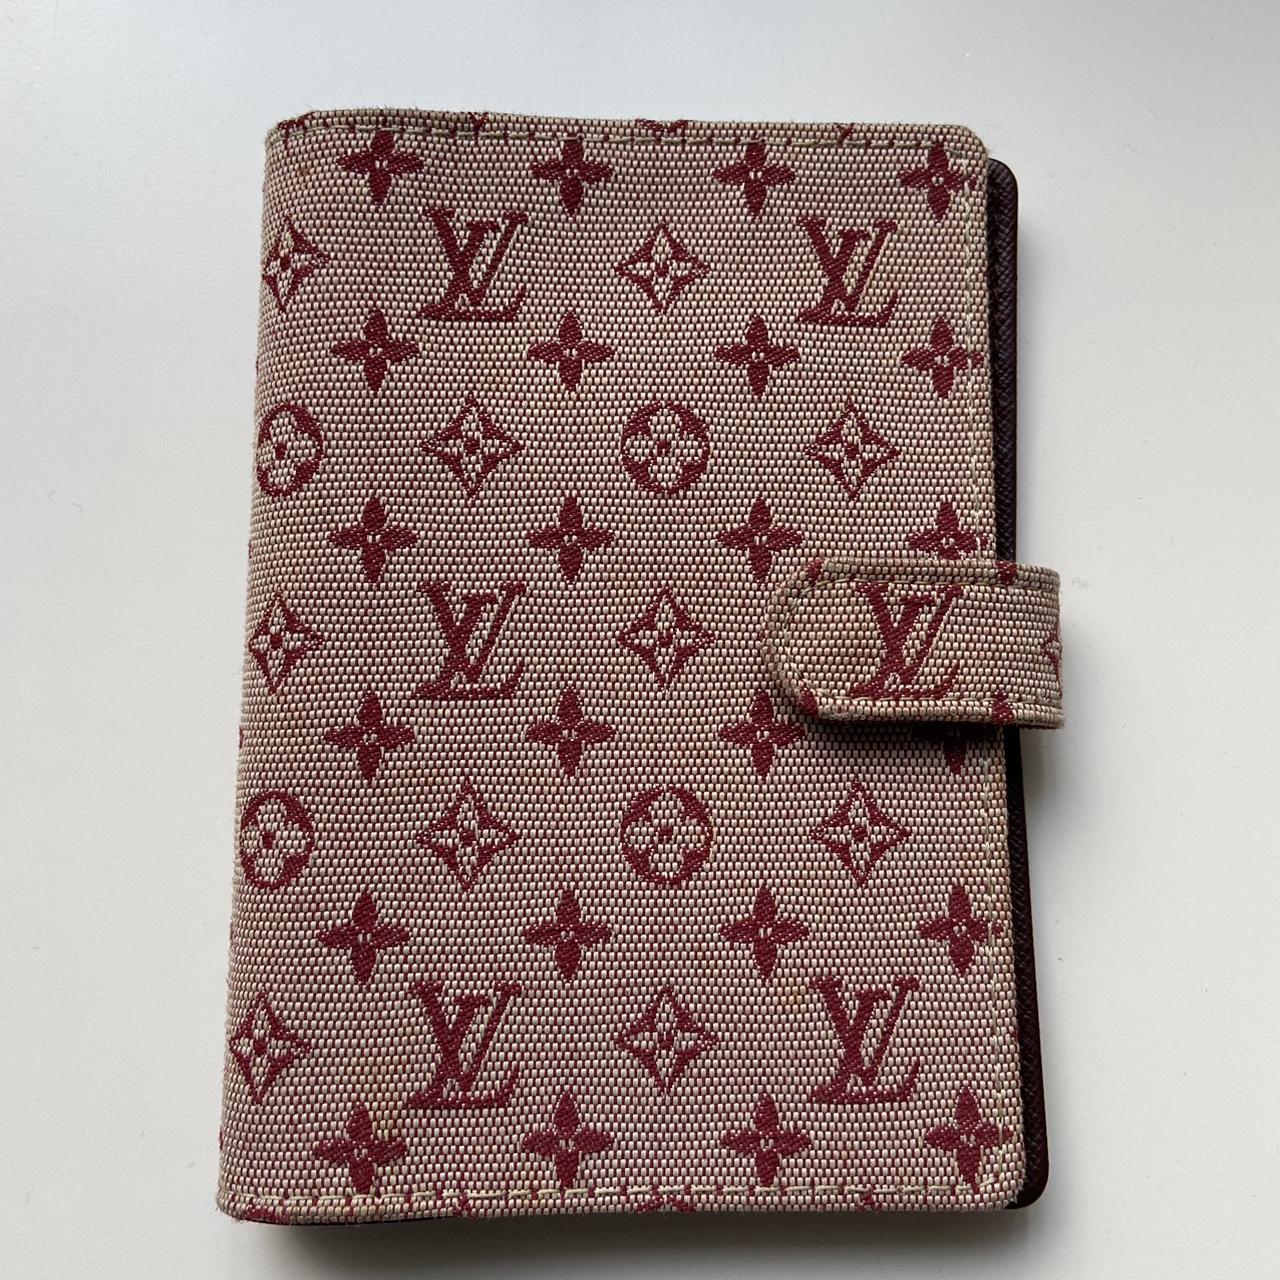 Vintage authentic LV Vernis Wallet Serial number is - Depop